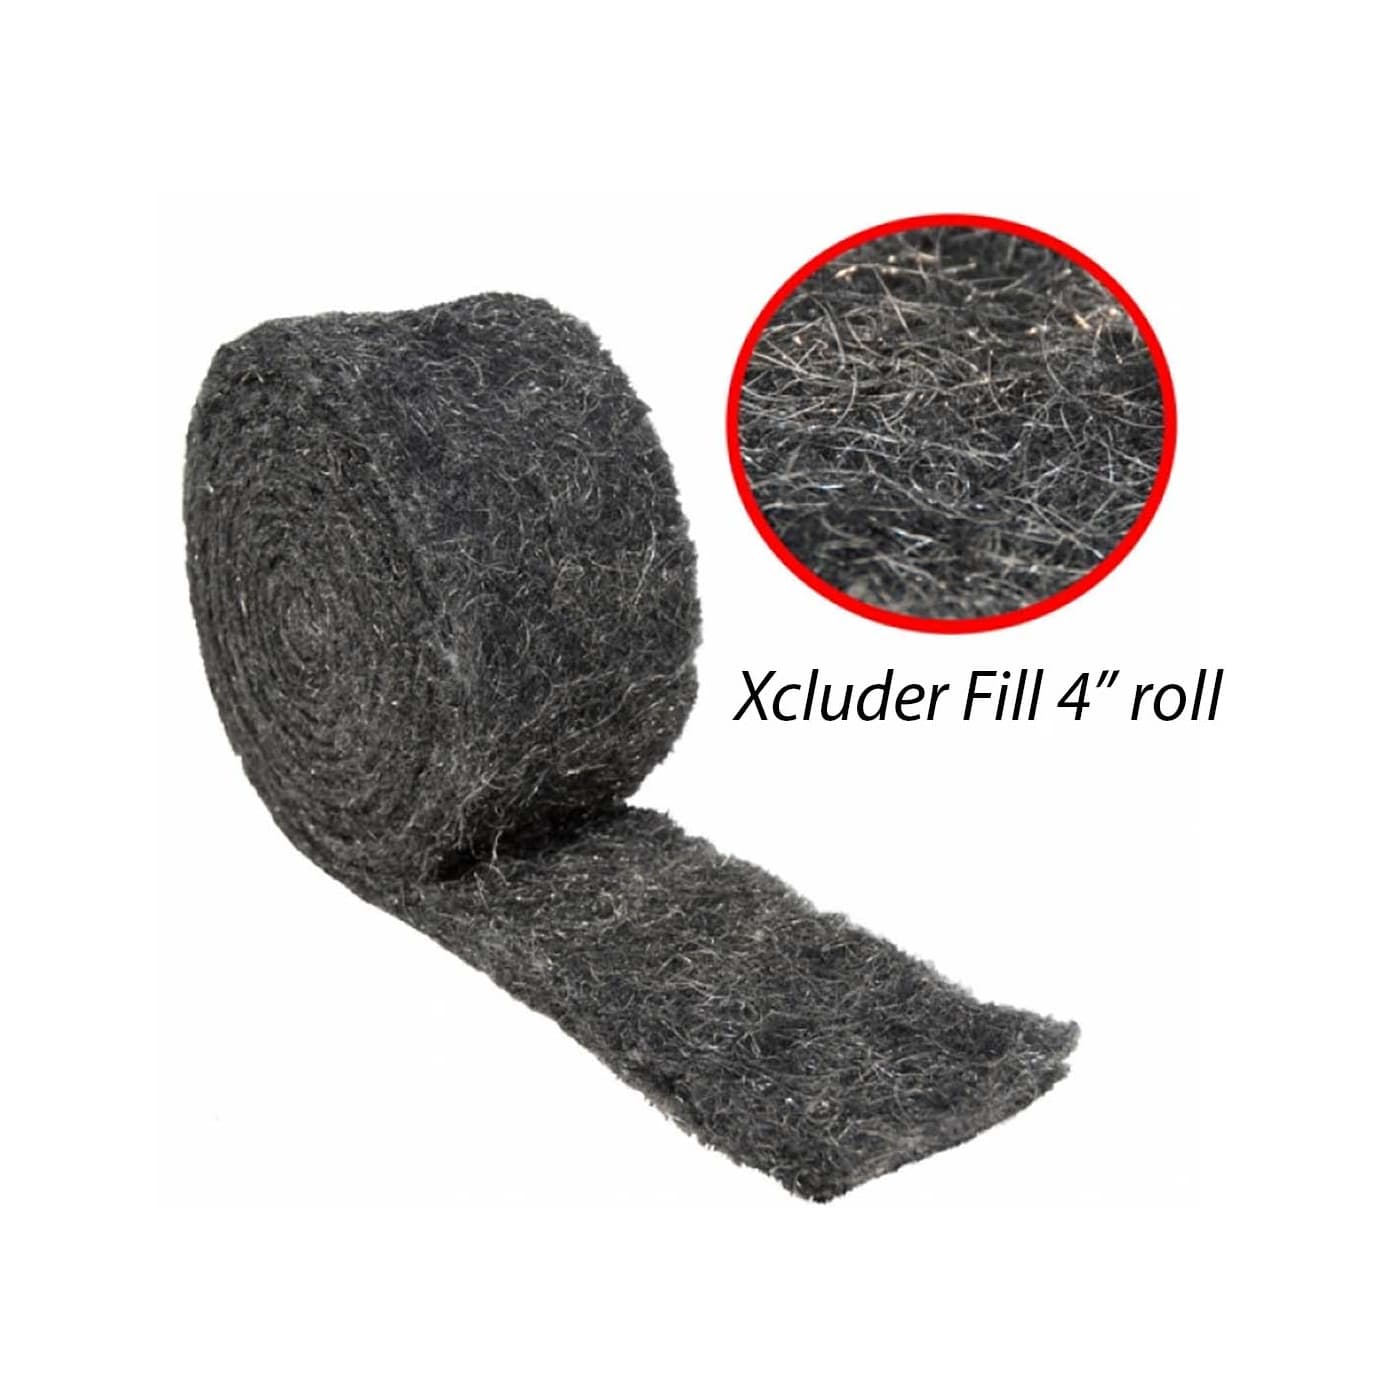 Xcluder 4" roll